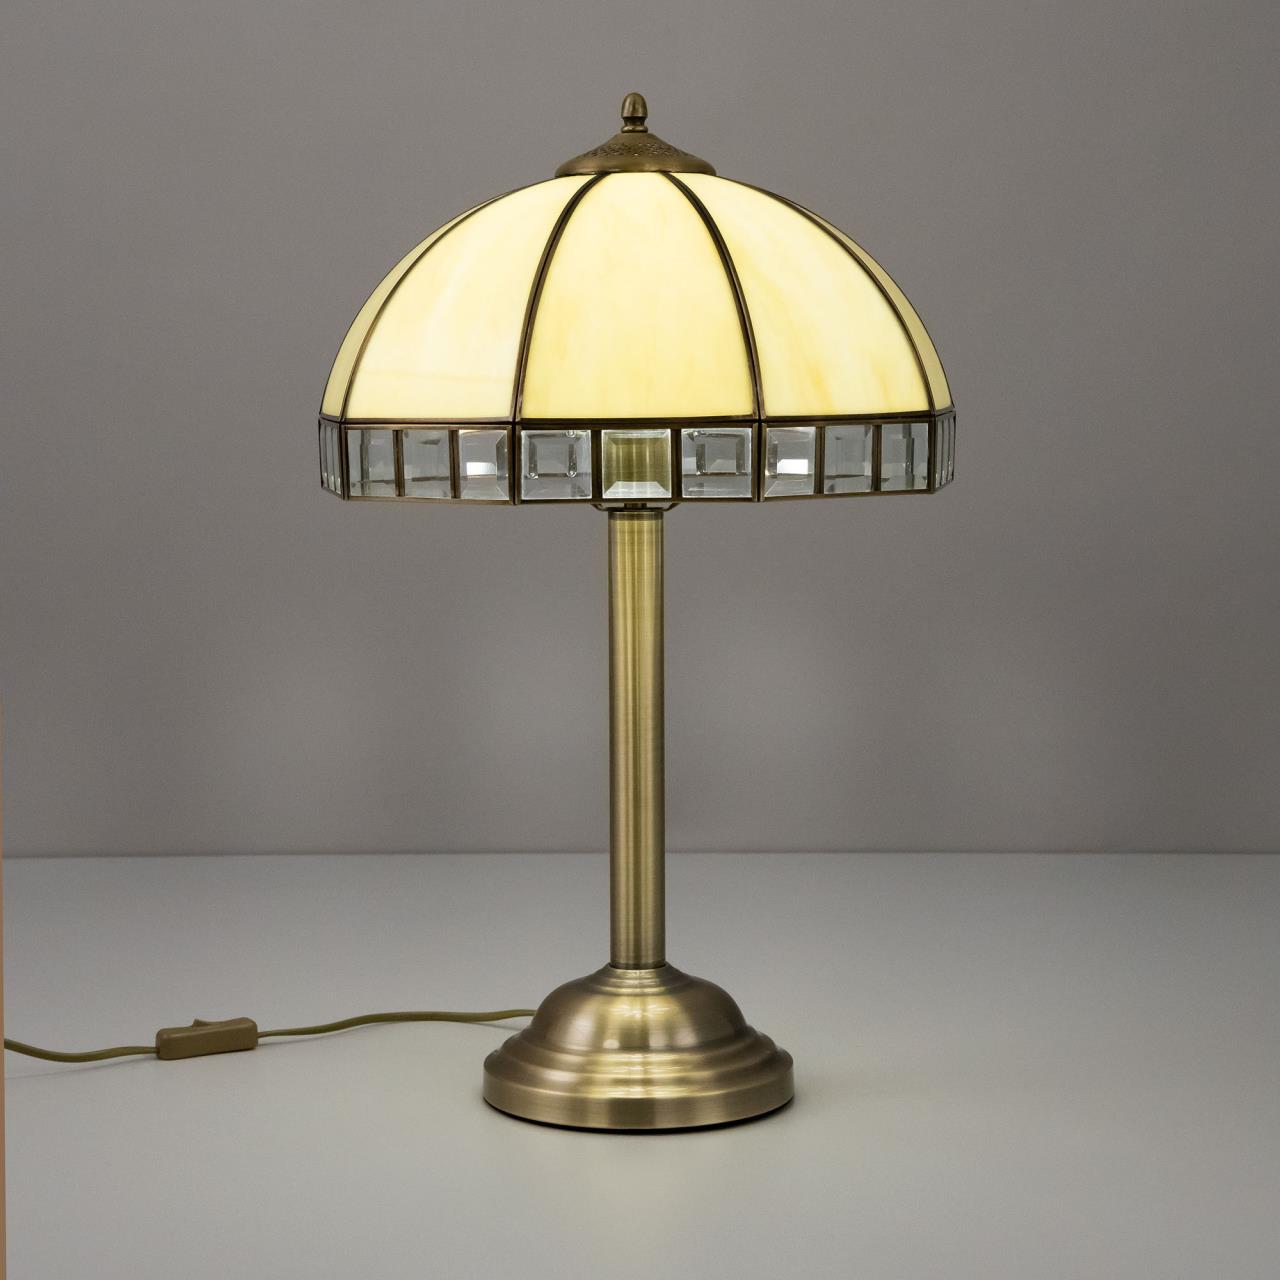 Настольная лампа Citilux Шербург-1 CL440811